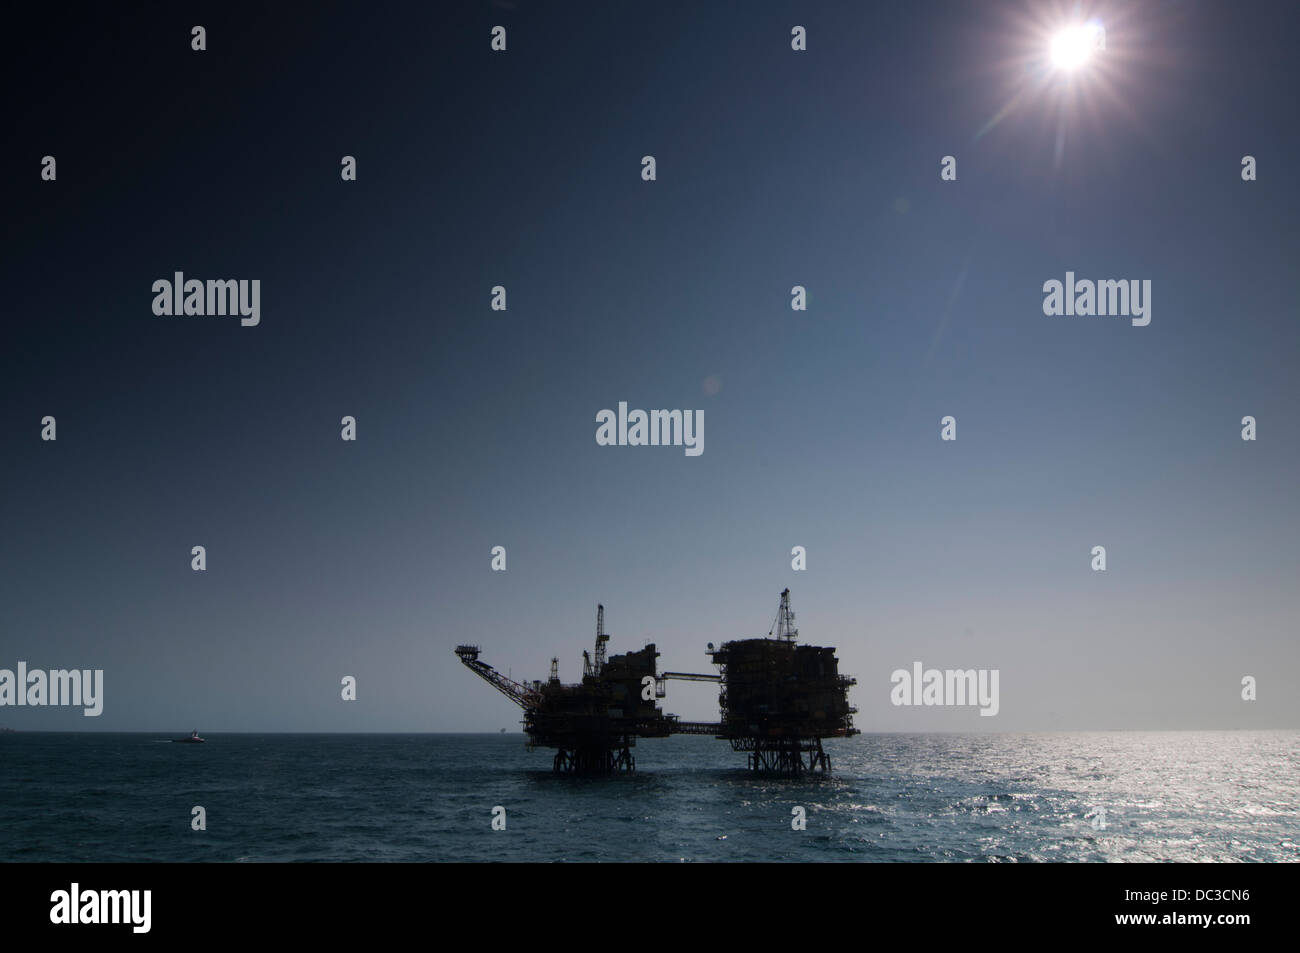 Silhouette d'une plate-forme pétrolière en zone extracôtière, dos dur lumière, ciel bleu, refelection sur surface de l'eau. Banque D'Images